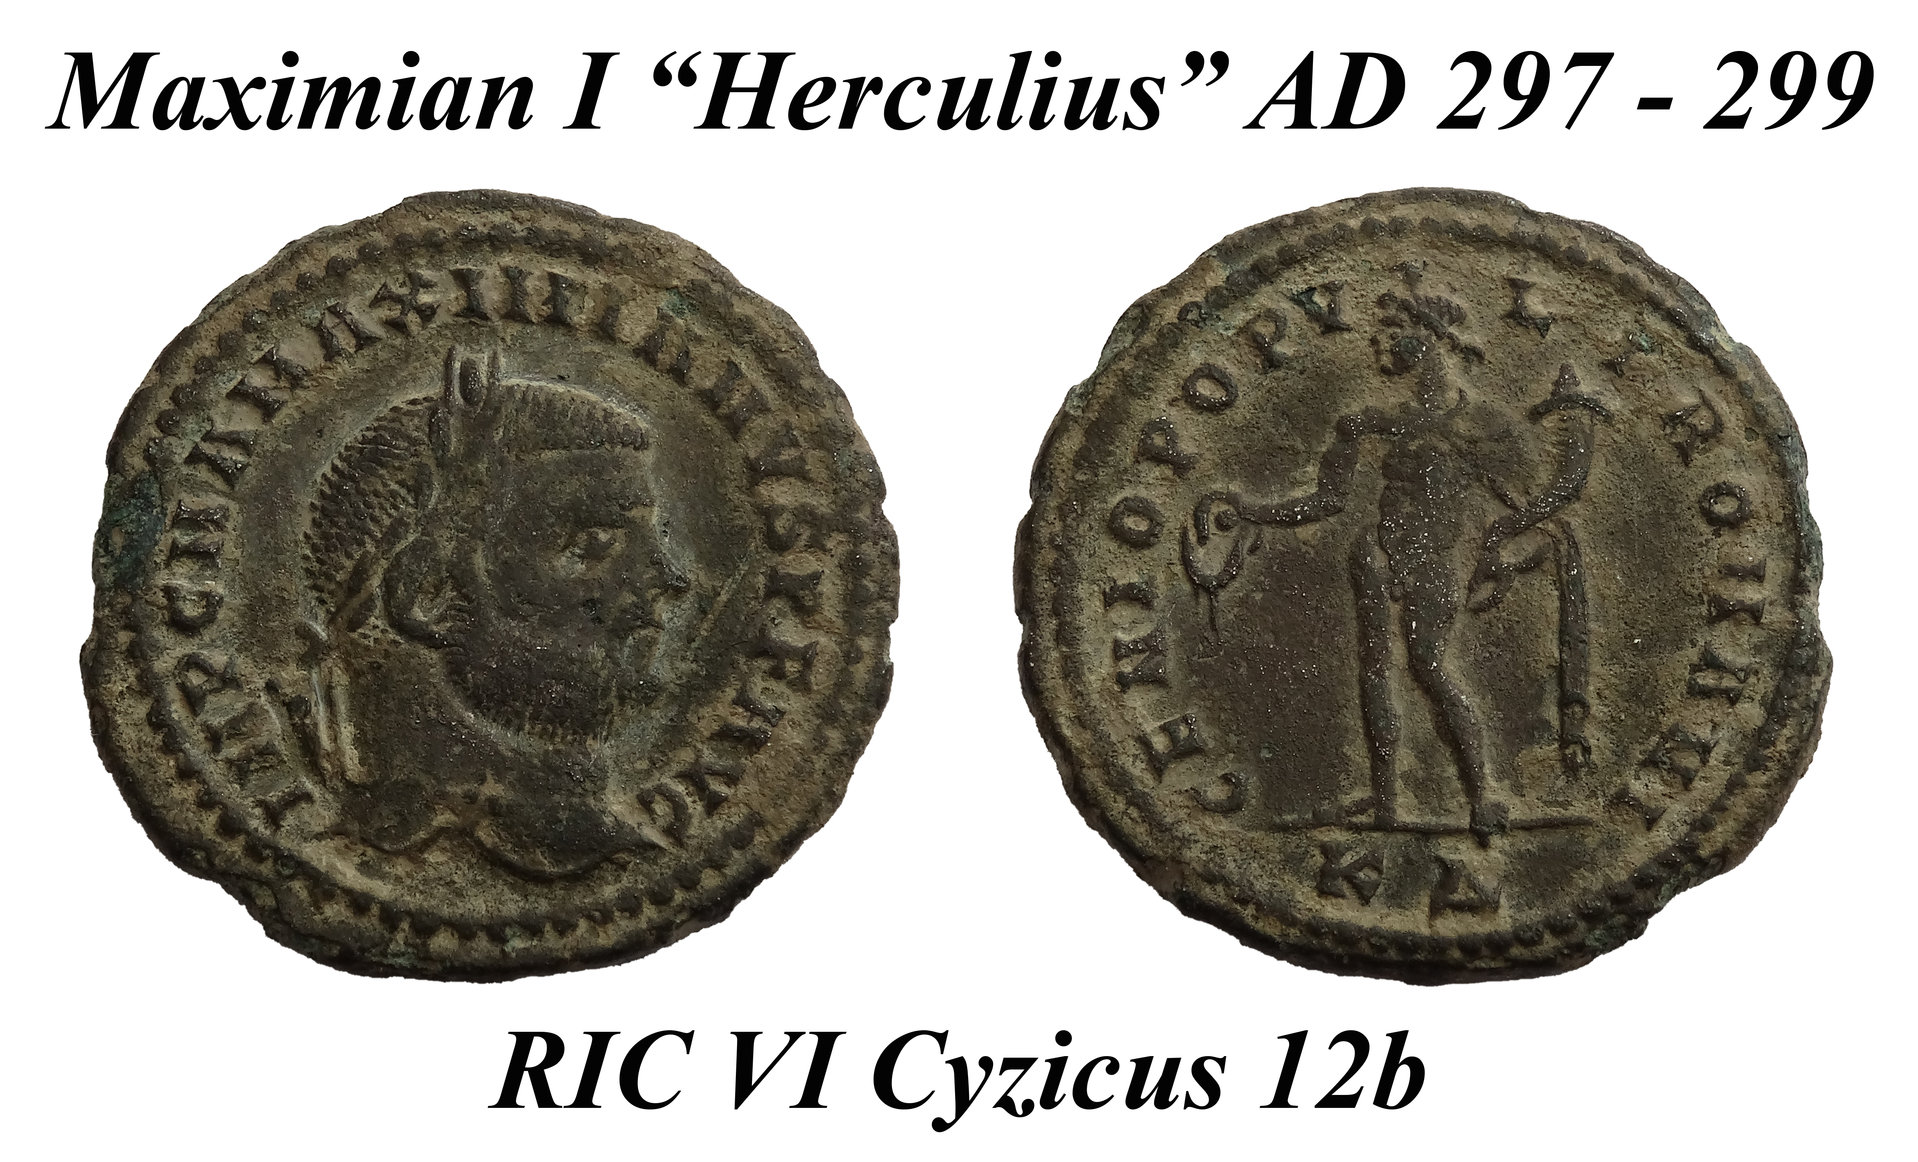 Maximian I Herculius Cyzicus 12b.jpg